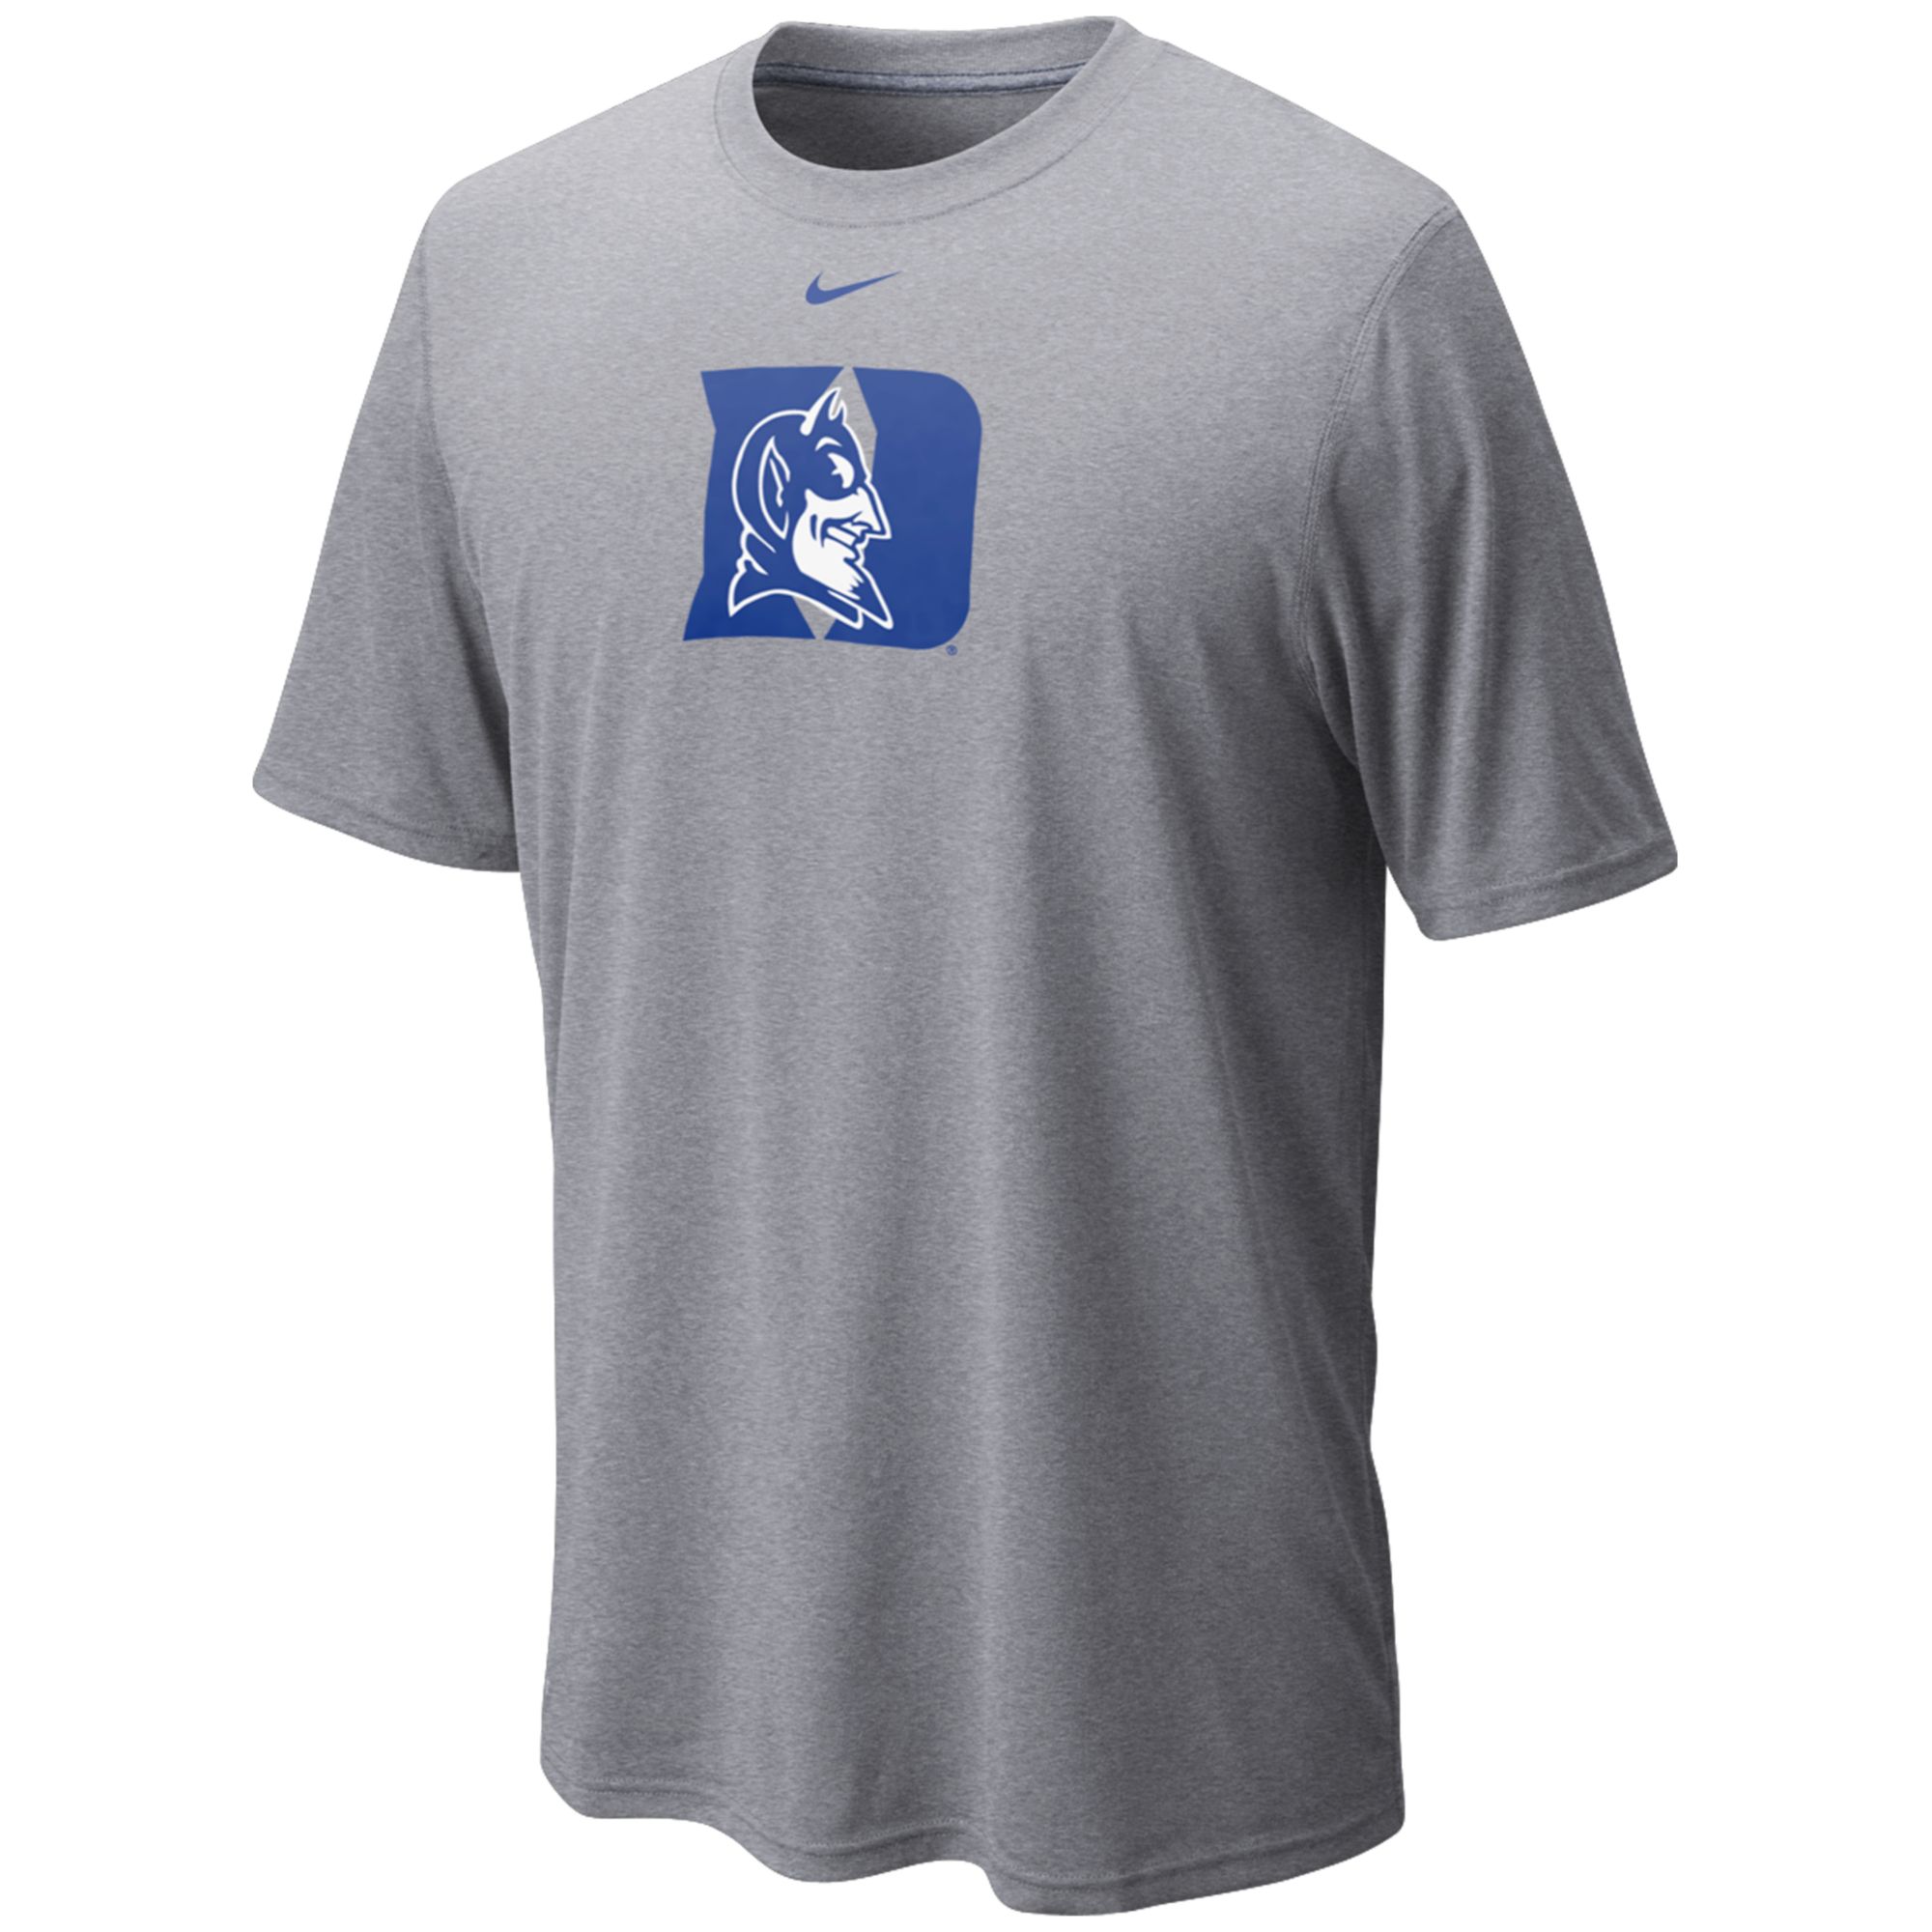 Nike Men's Short-Sleeve Dri-FIT Duke Blue Devils T-Shirt in Gray for ...